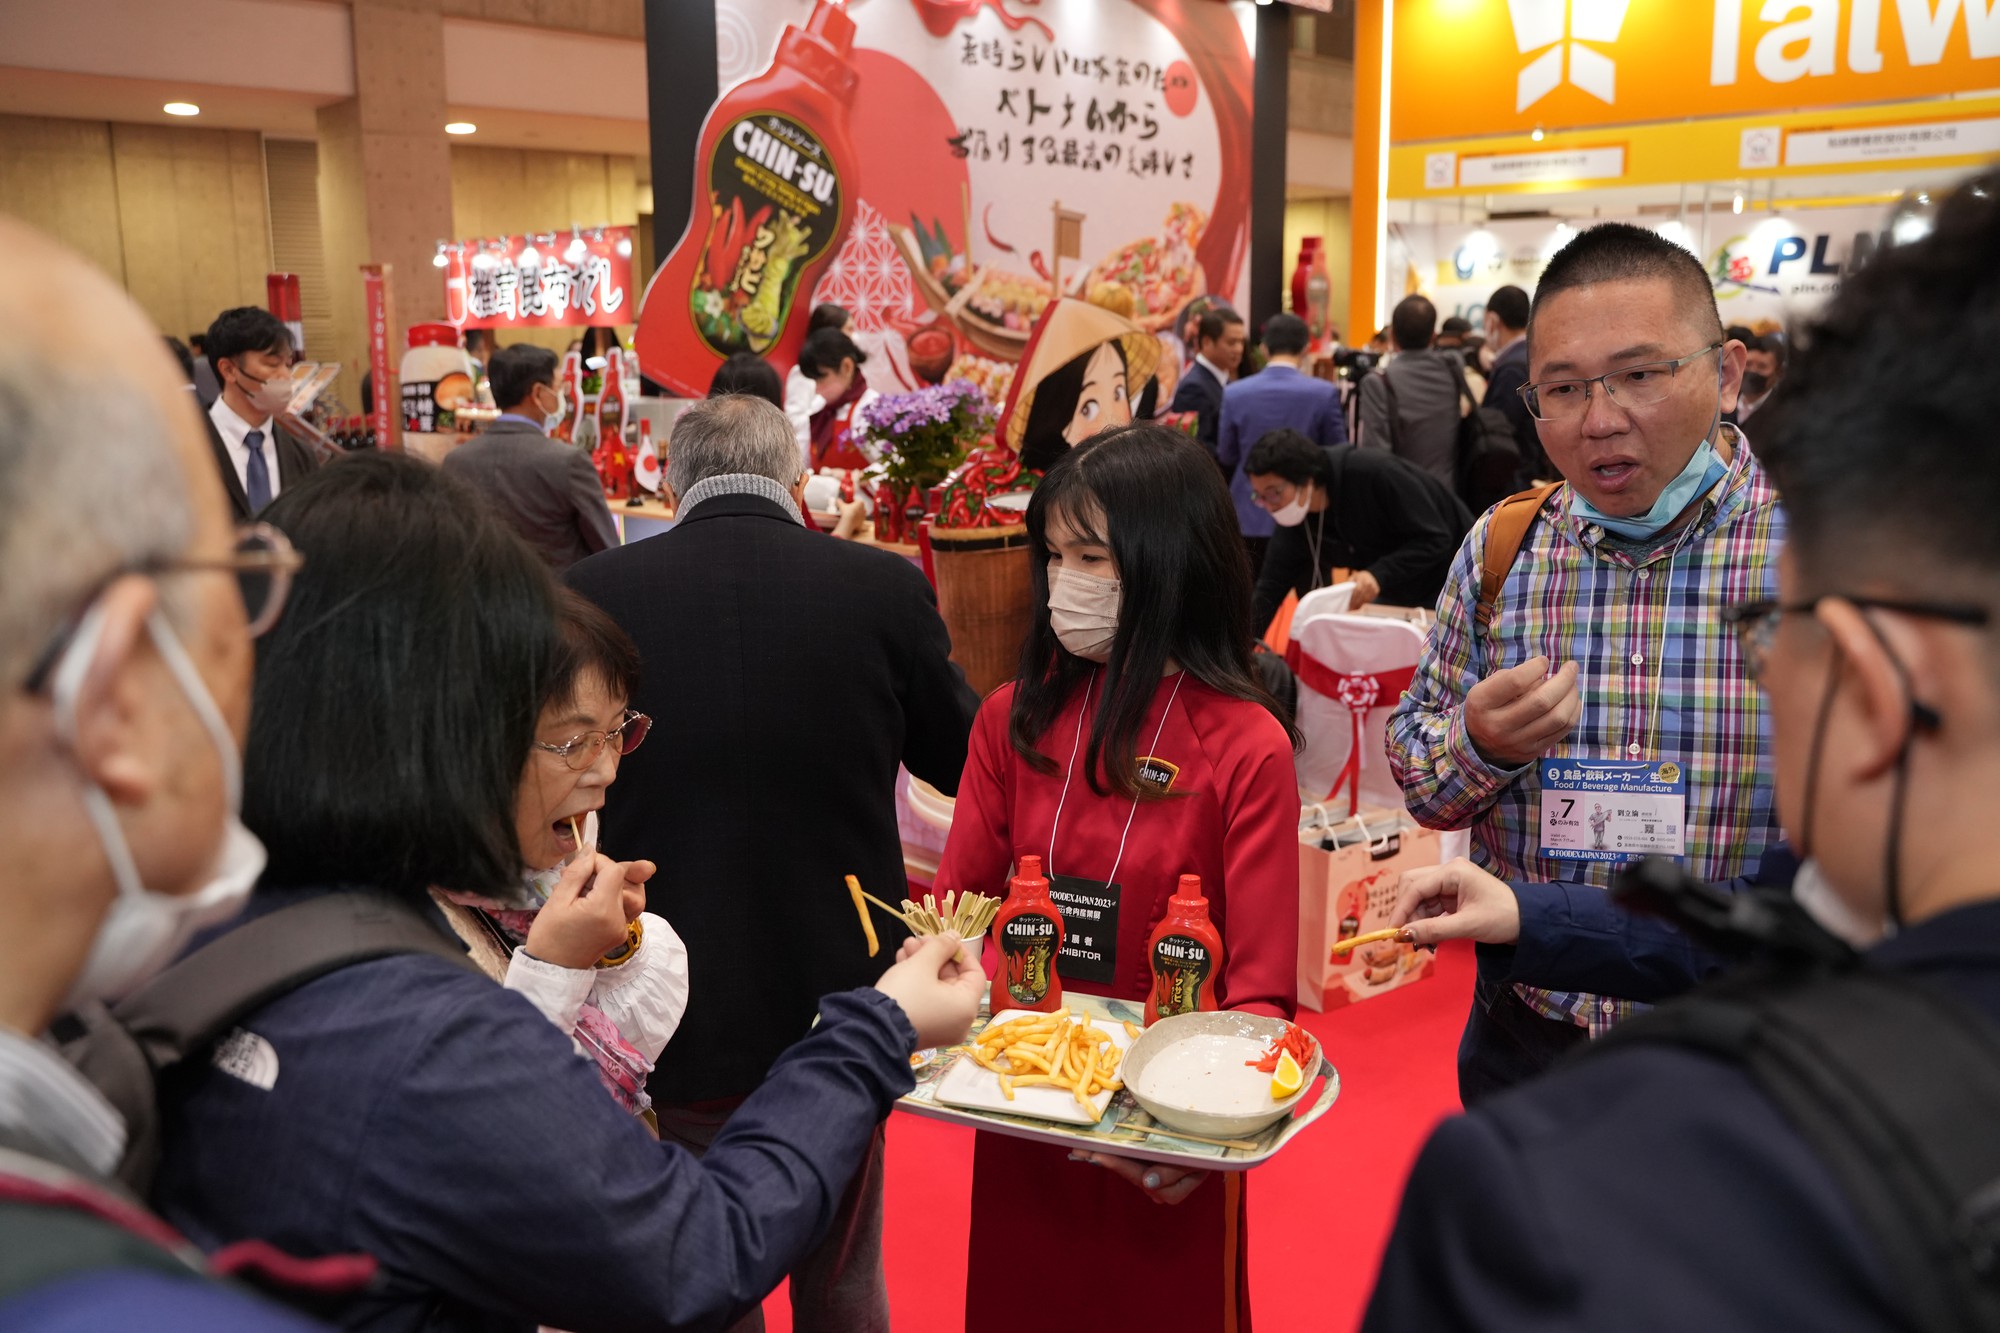 CHIN-SU tham gia Foodex Nhật Bản, mang hương vị Việt ra thế giới - Ảnh 2.